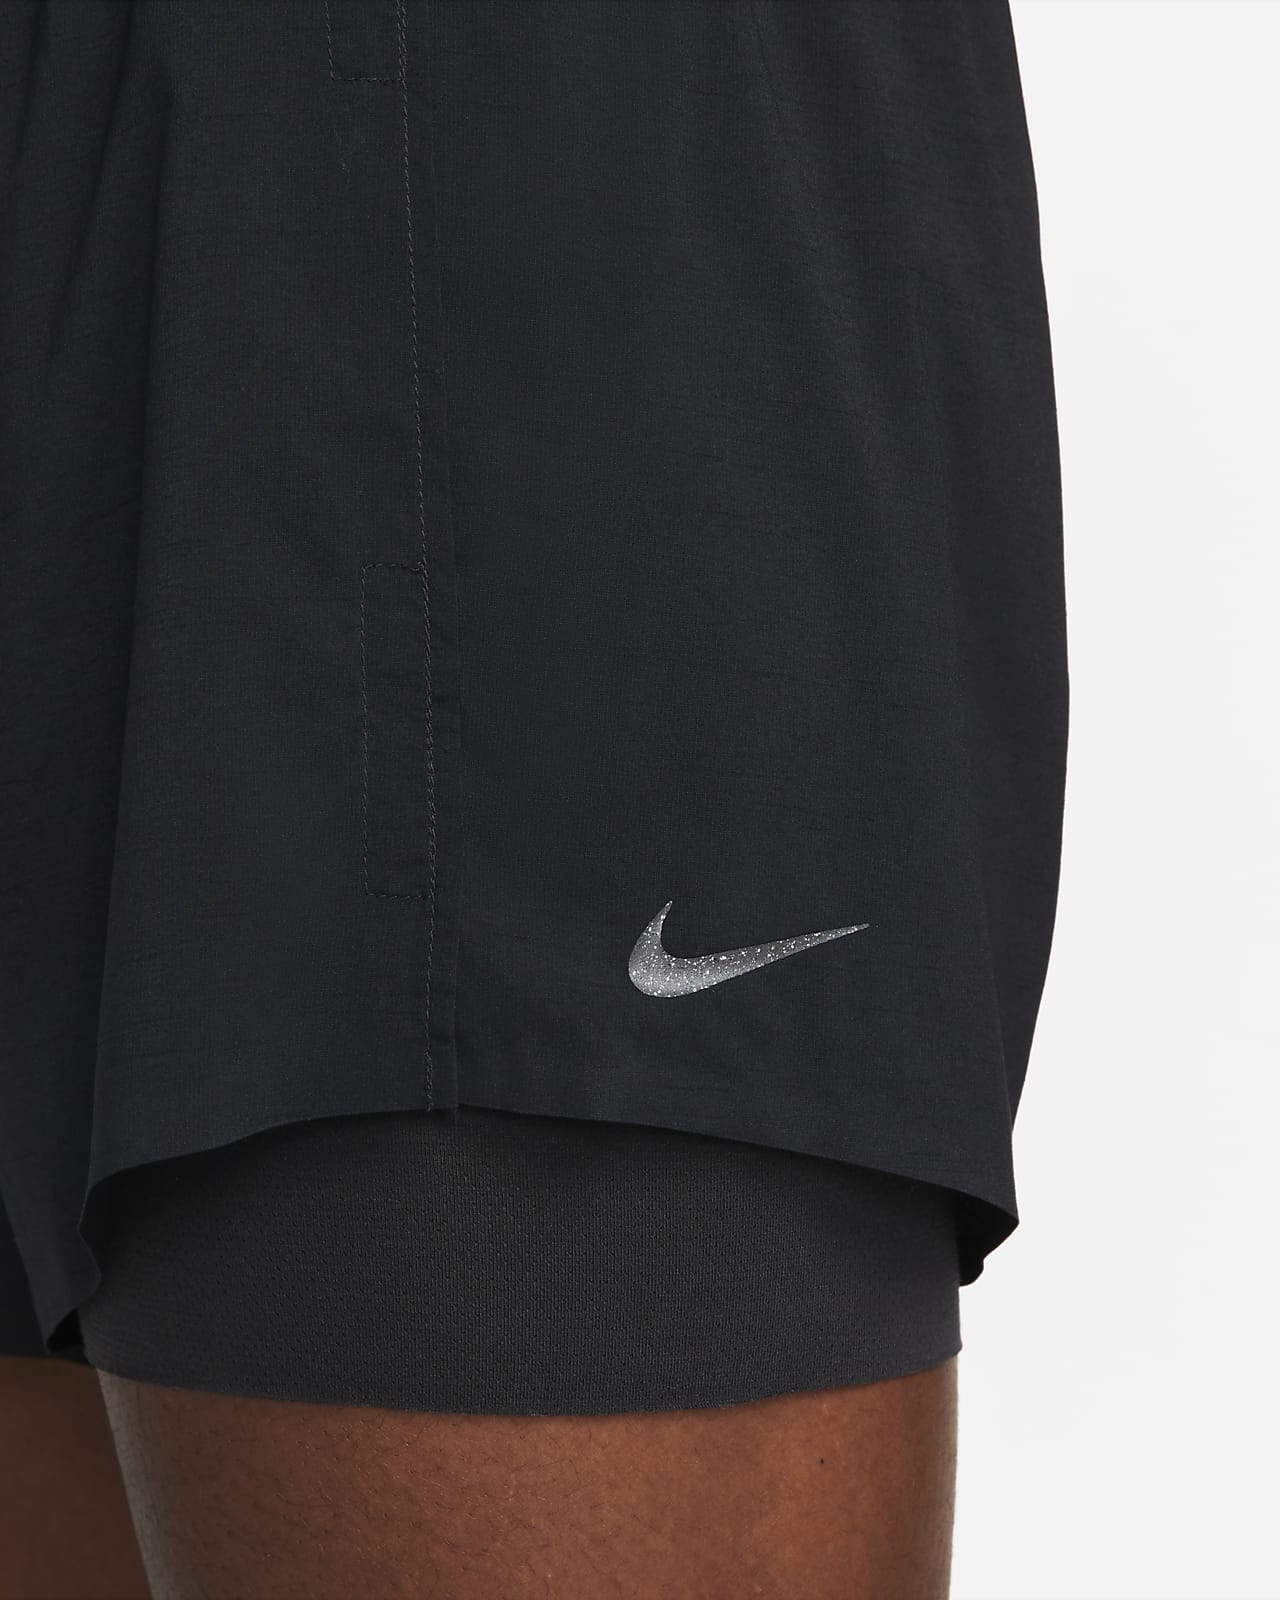 Nike Yoga Shorts